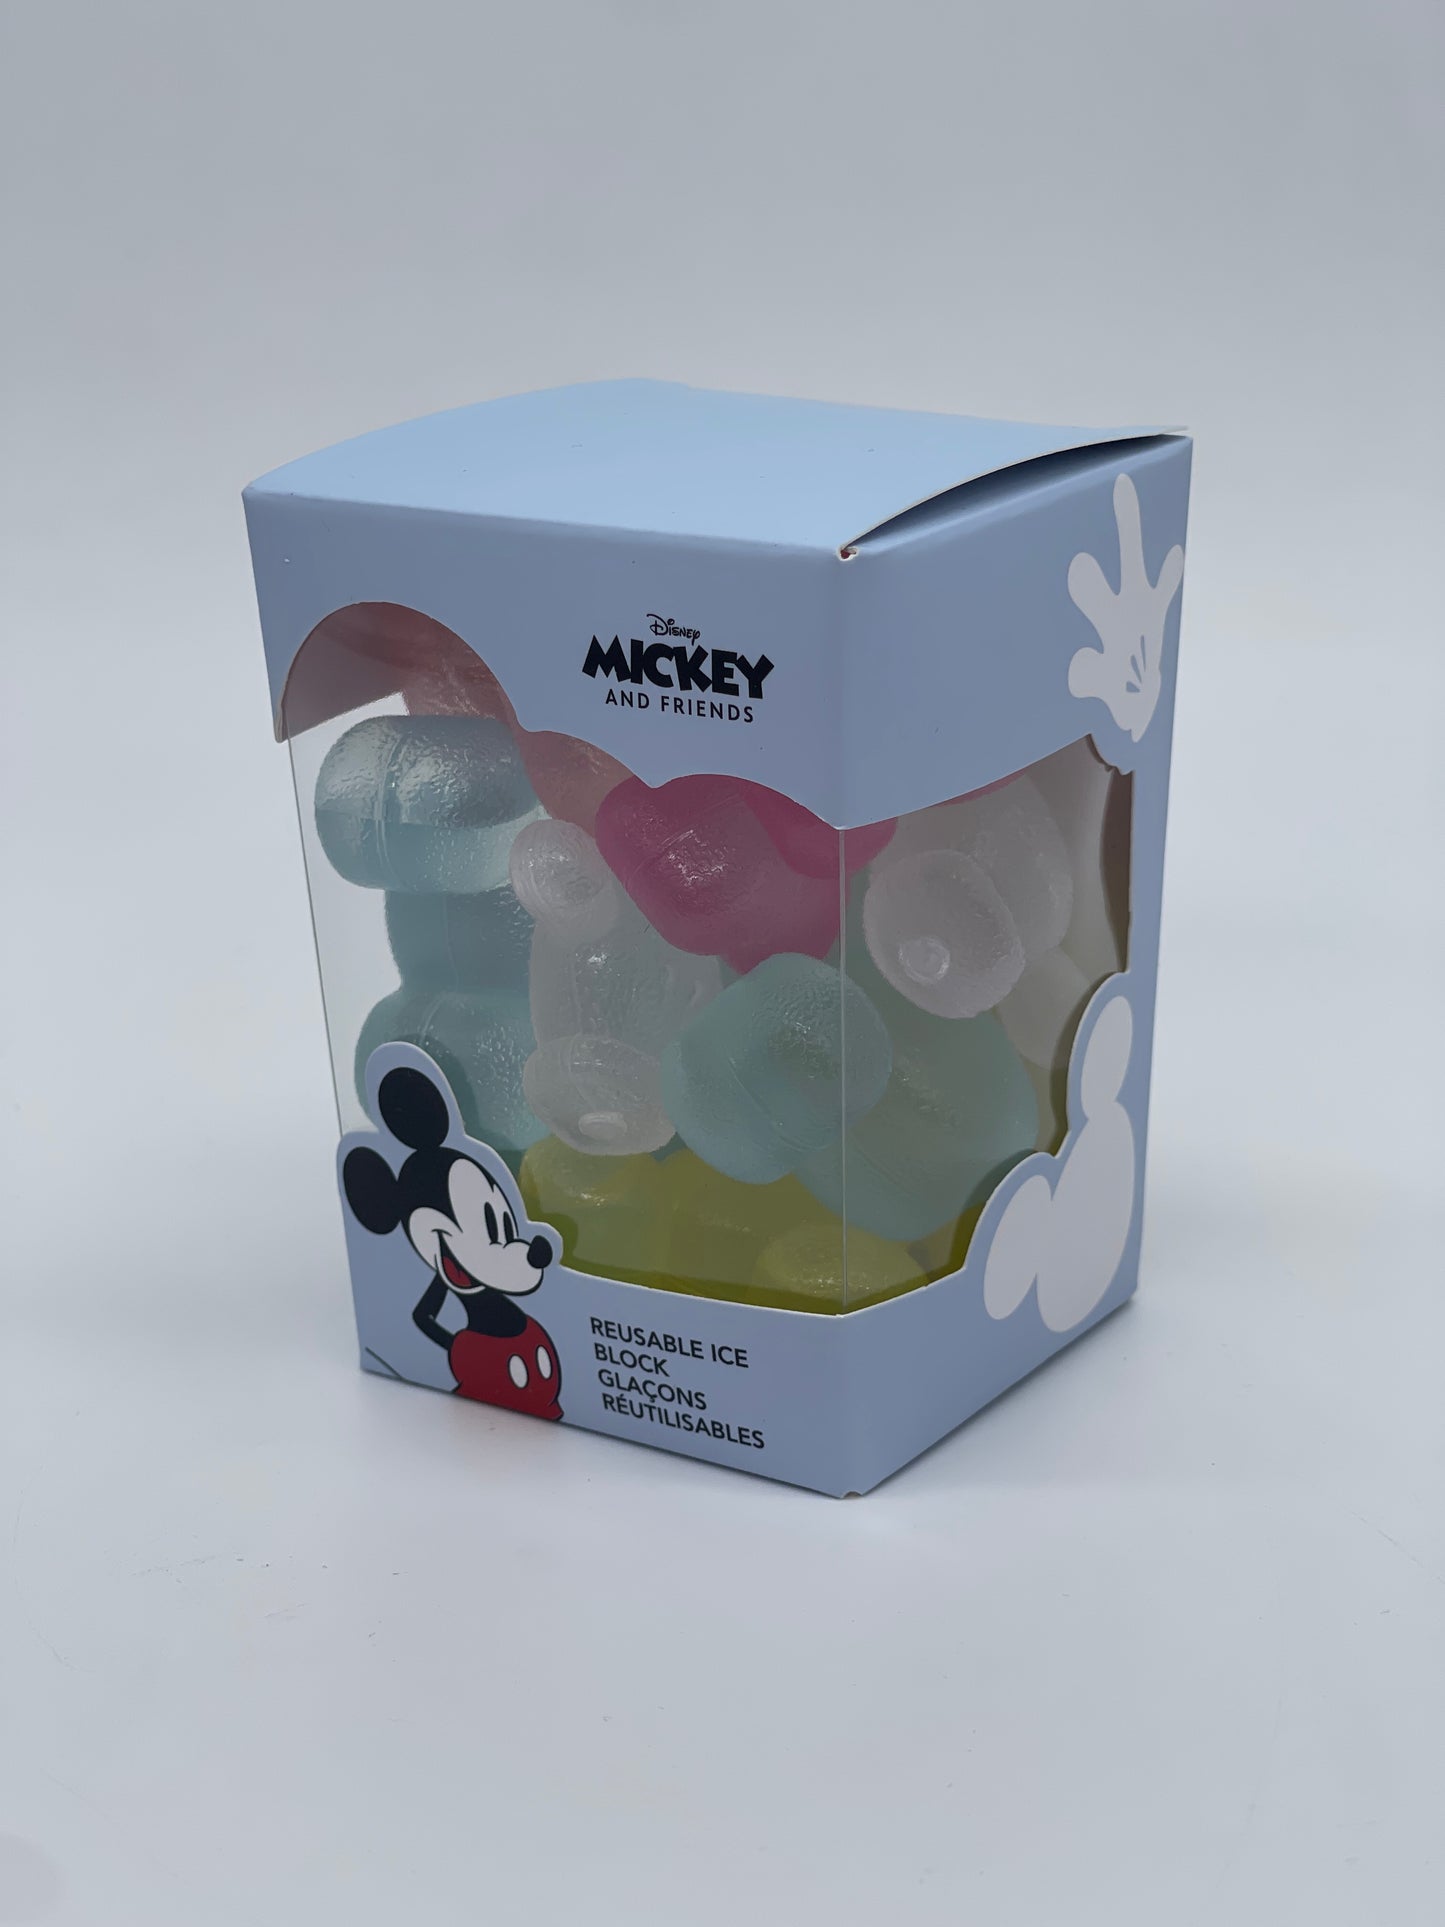 MINISO Japan "Eiswürfel, wiederverwendbar" Disney Mickey and Friends